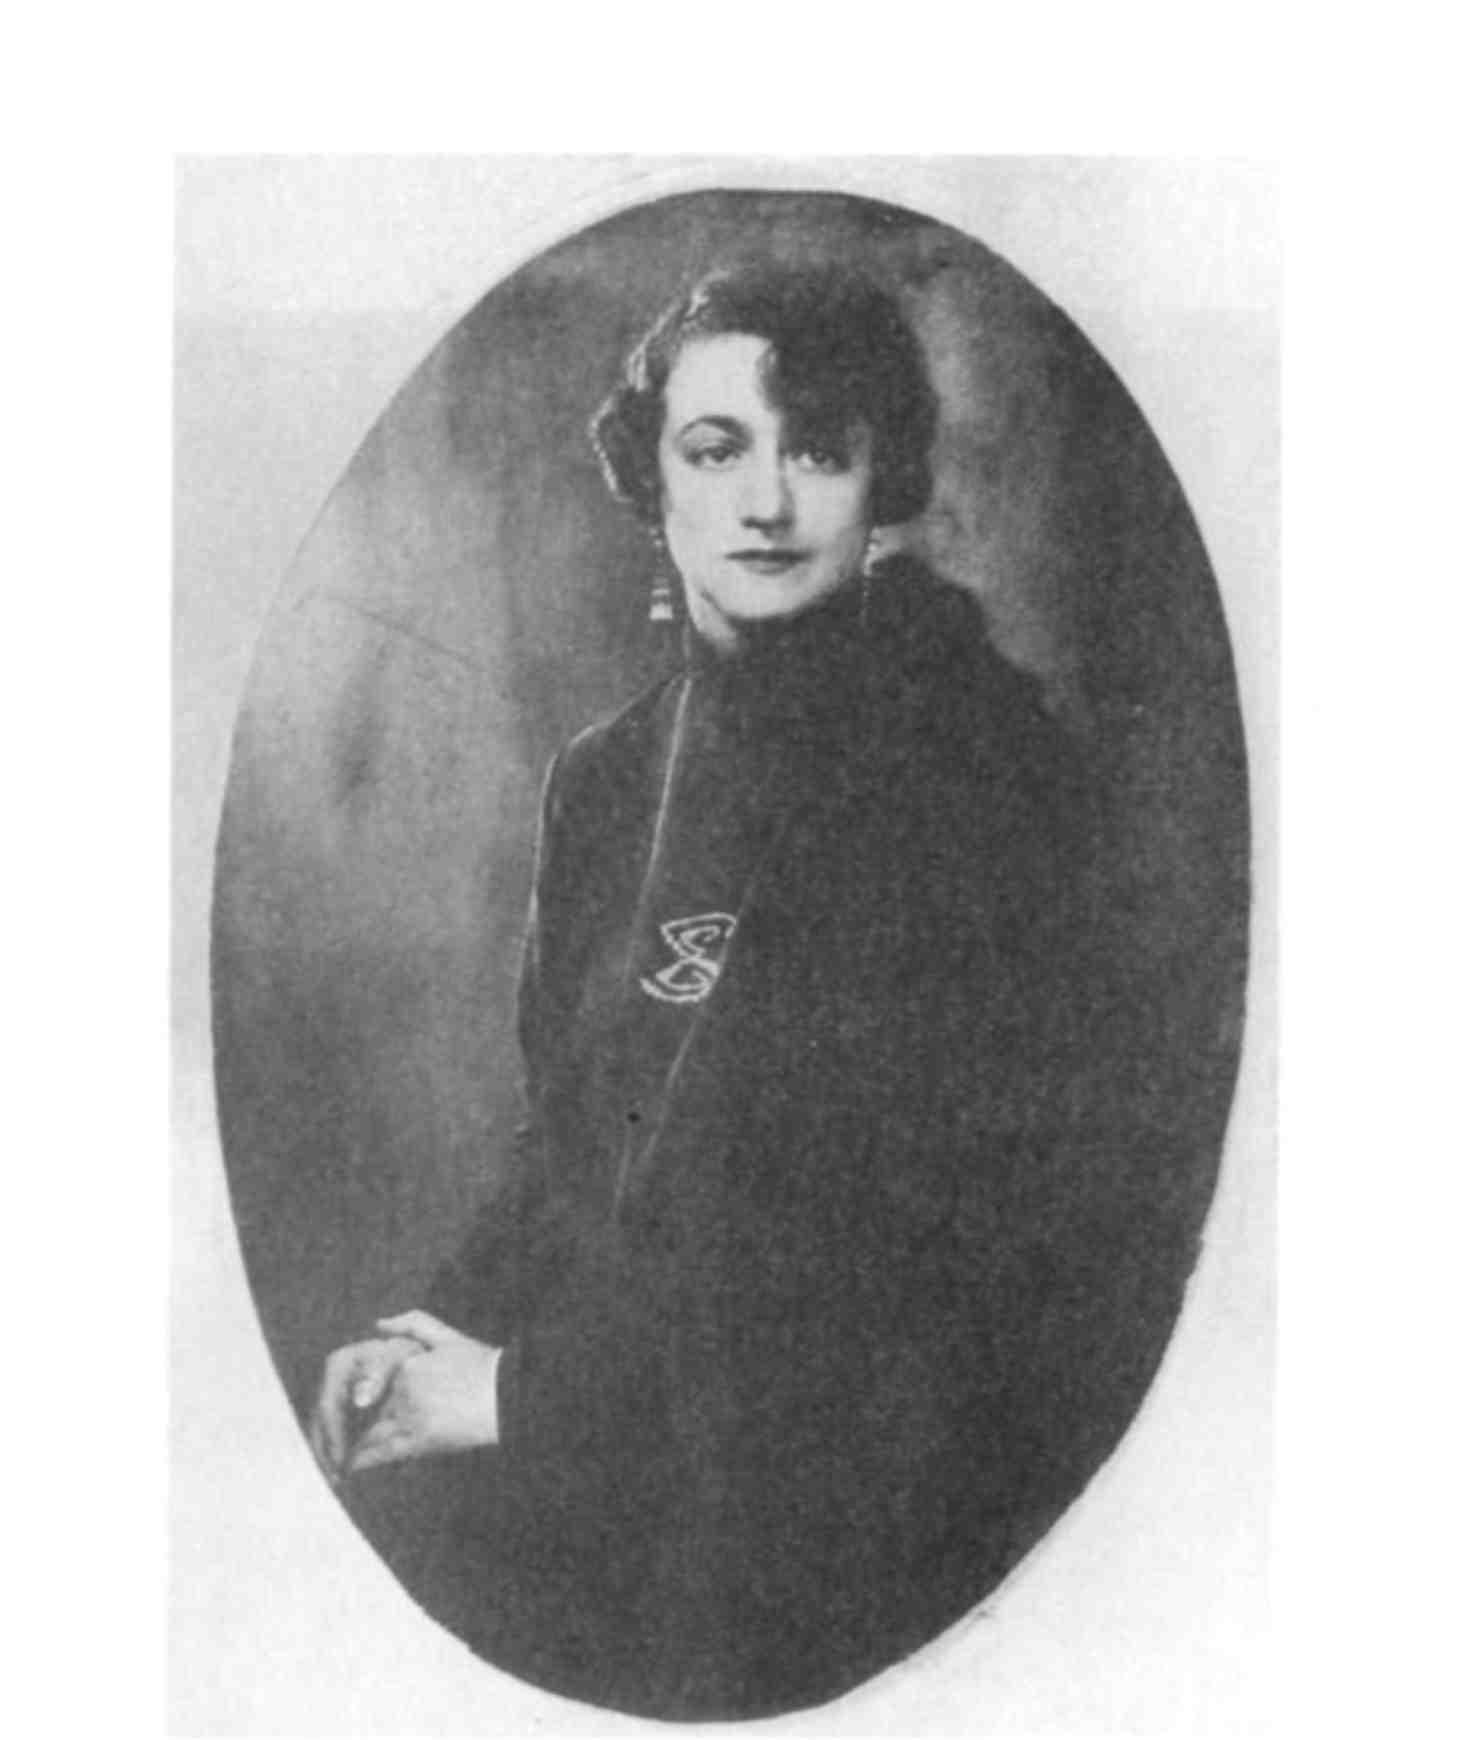 Елена Сергеевна еще Шиловская 1920е годы М Файнзильберг В Катаев - фото 3